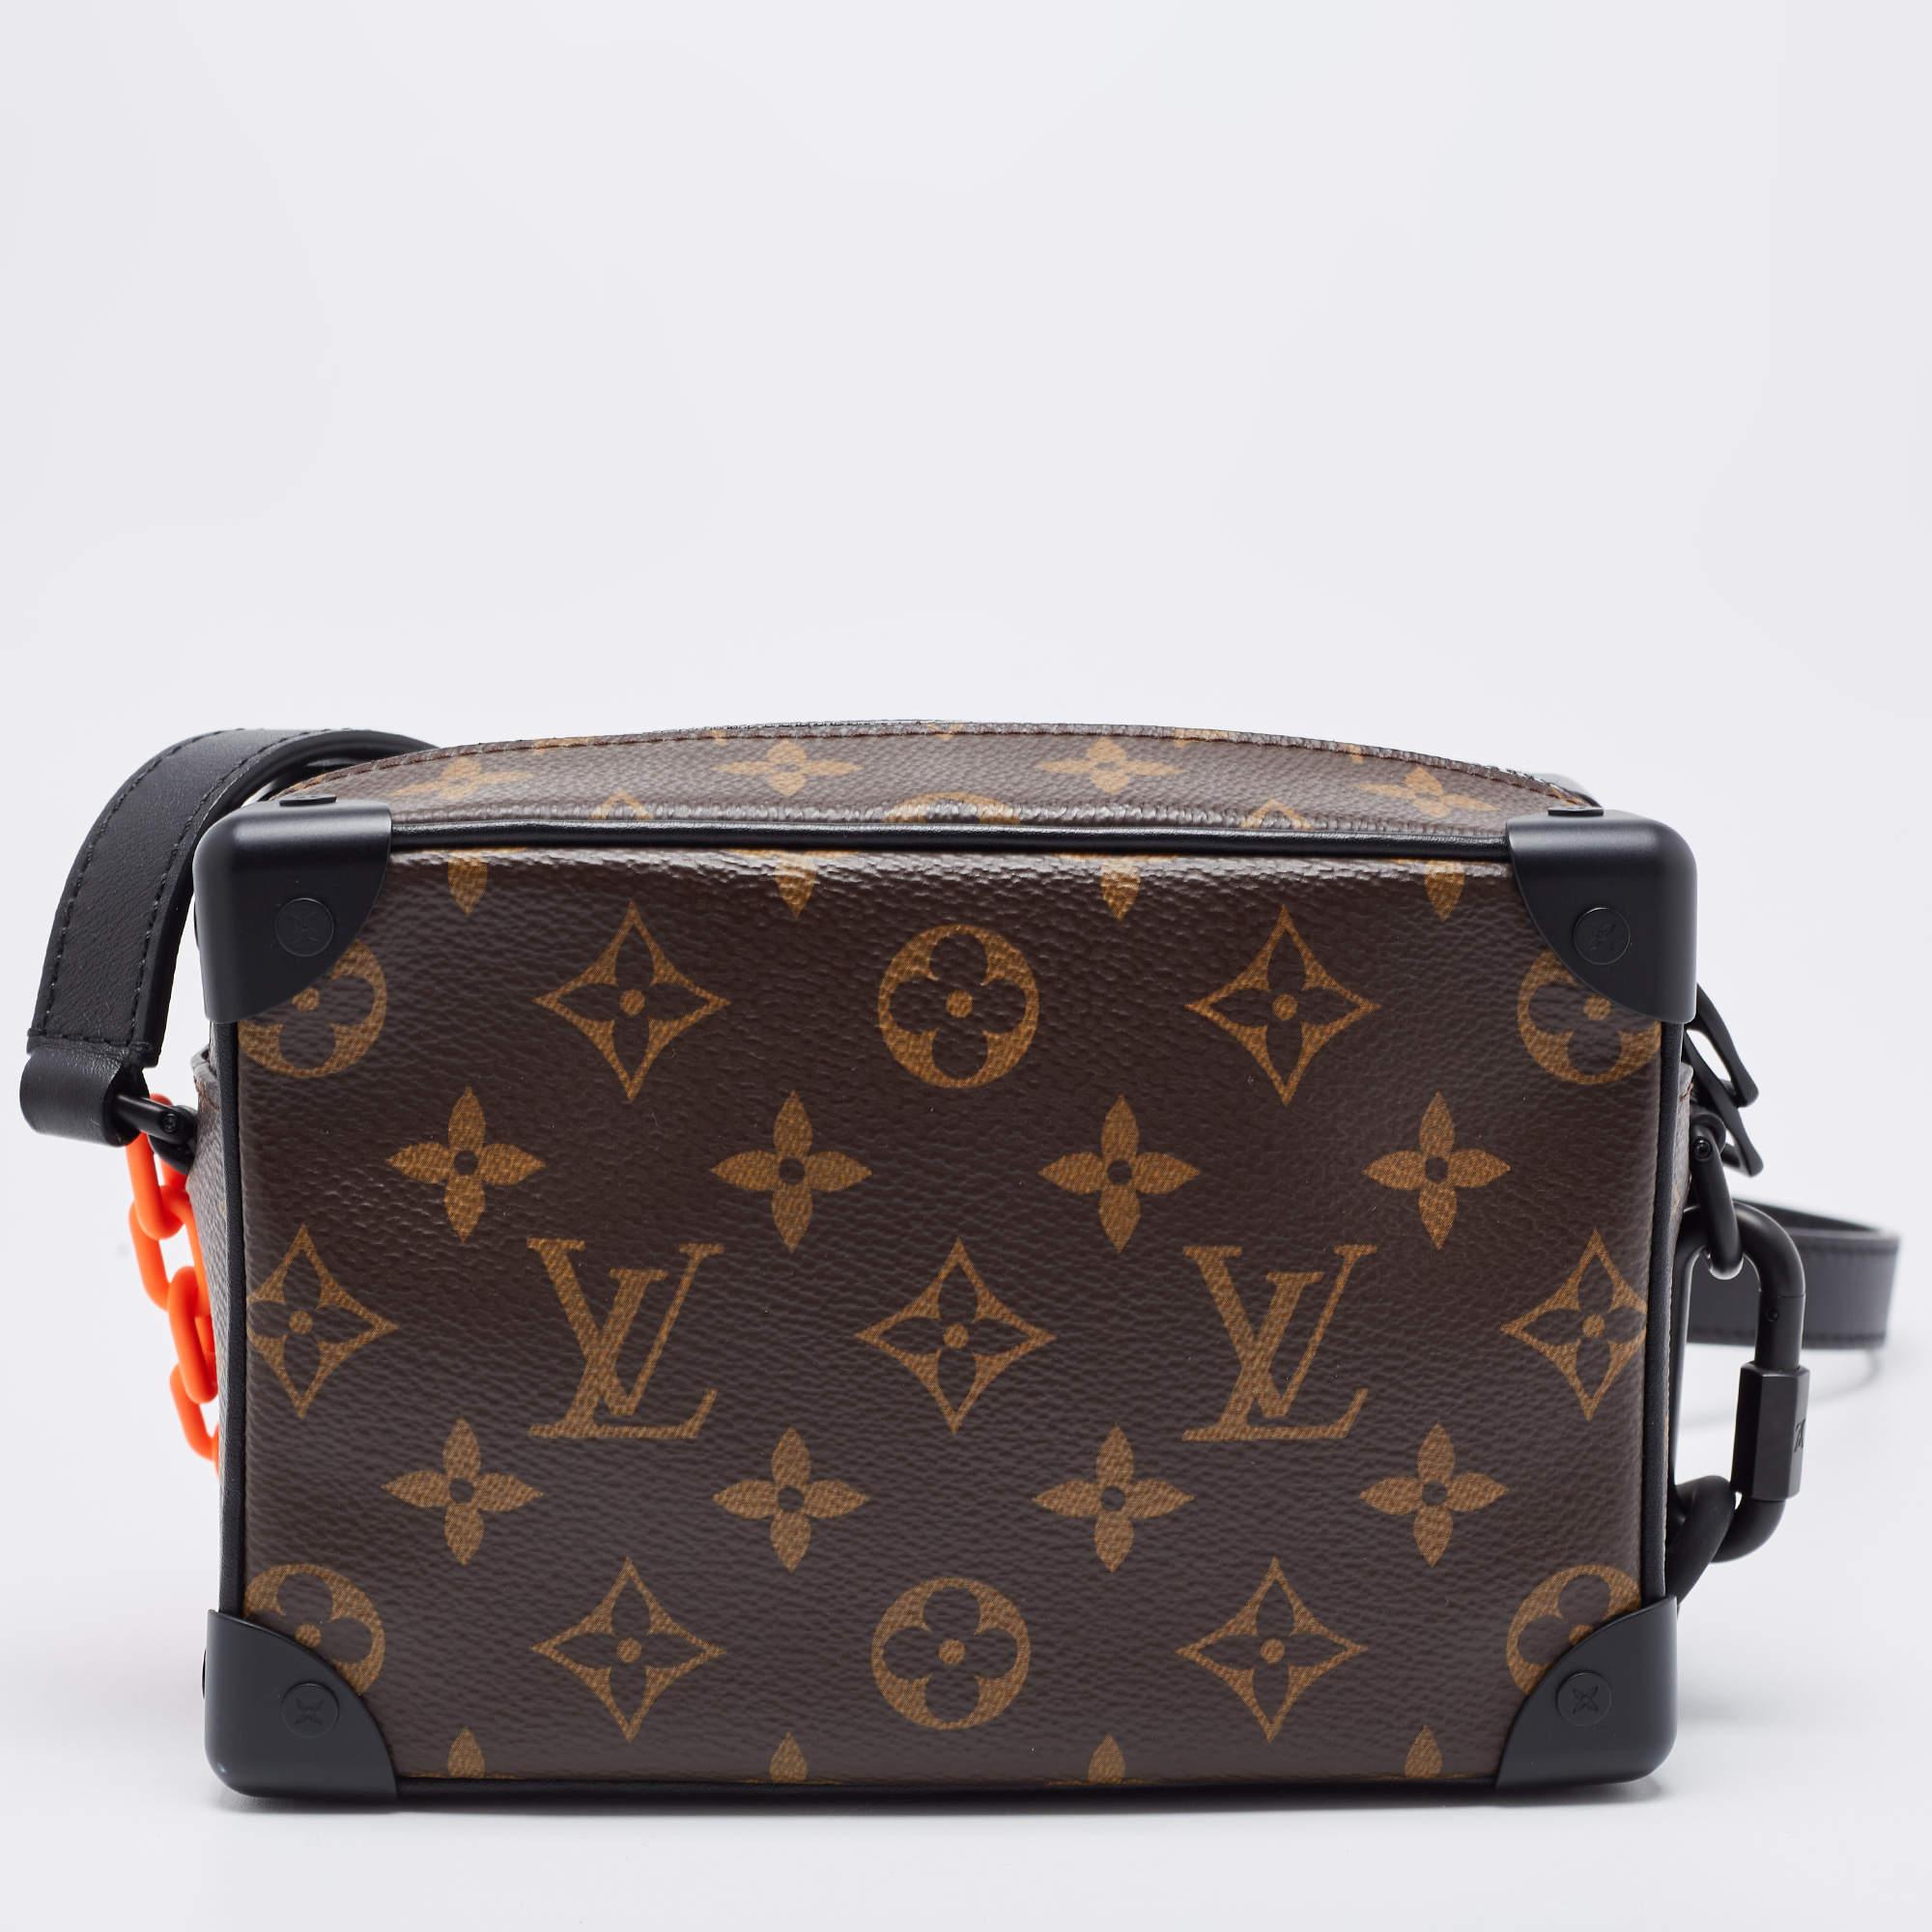 Le sac à main Louis Vuitton Black Monogram Canvas Mini Solar Ray Soft Trunk Bag est un accessoire luxueux, arborant l'emblématique toile LV monogram avec un motif unique de rayons solaires. Il est doté d'un format compact, d'une bordure en cuir noir